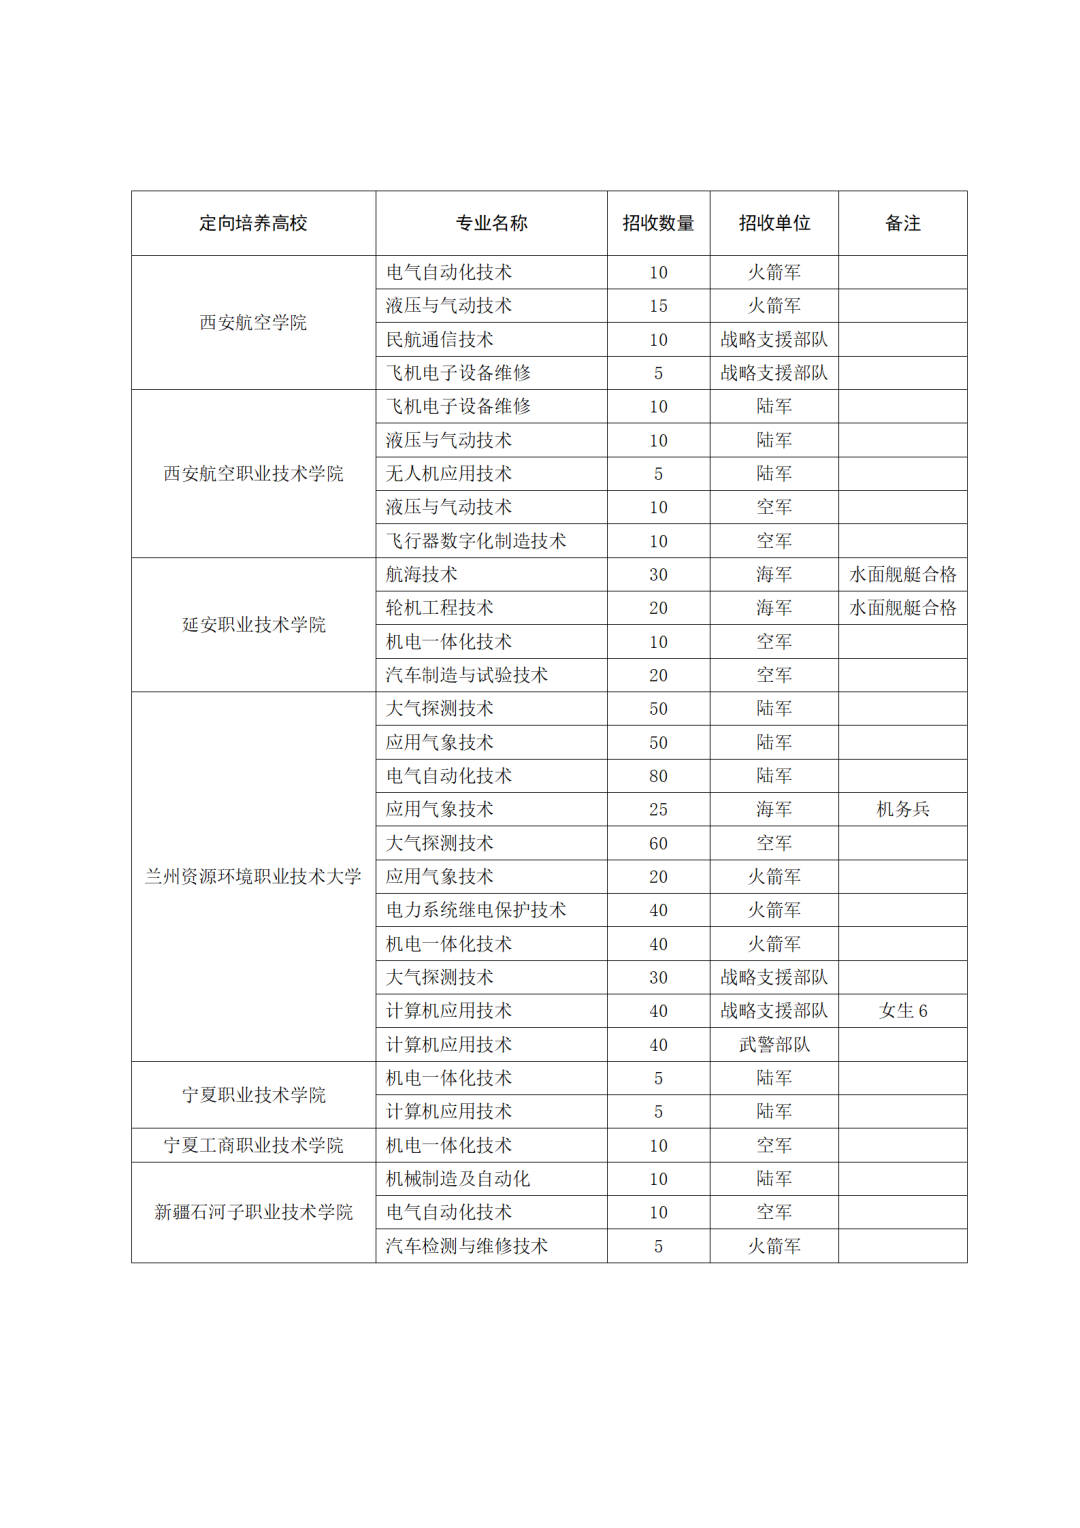 甘肃省2021年招收定向培养士官工作公告图3